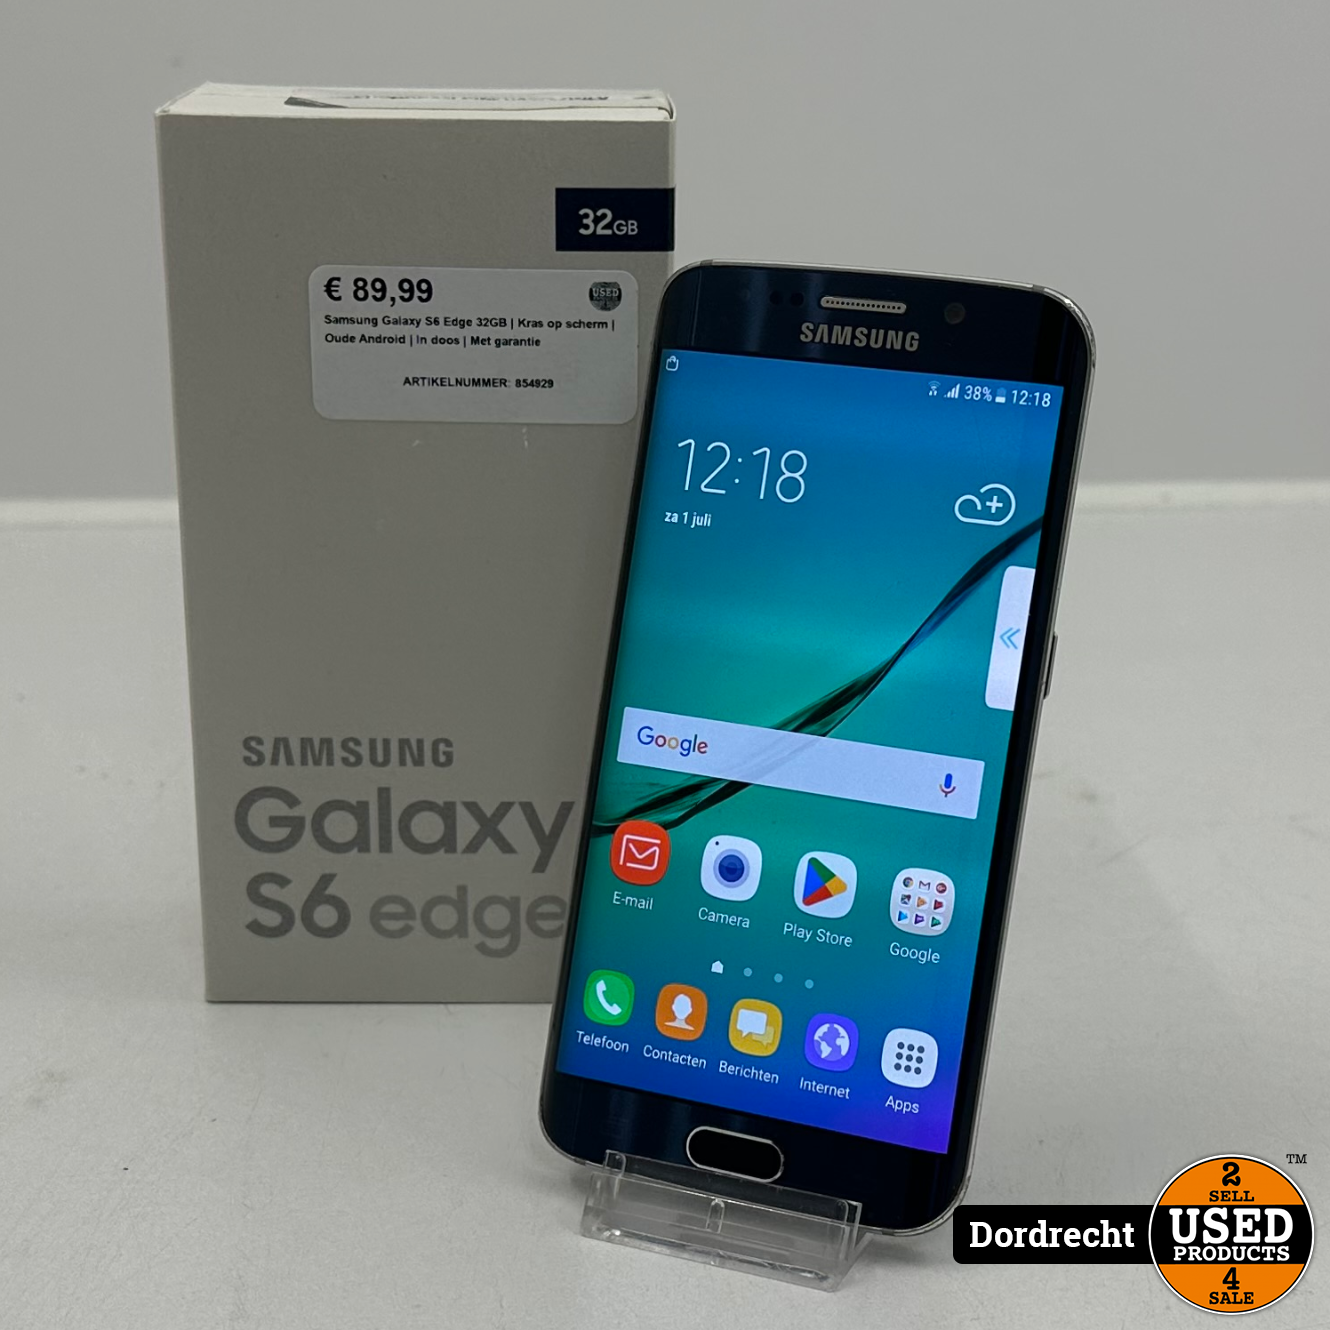 draaipunt Superioriteit Trek Samsung Galaxy S6 Edge 32GB Blauw | Kras op scherm | Oude Android | In doos  | Met garantie - Used Products Dordrecht